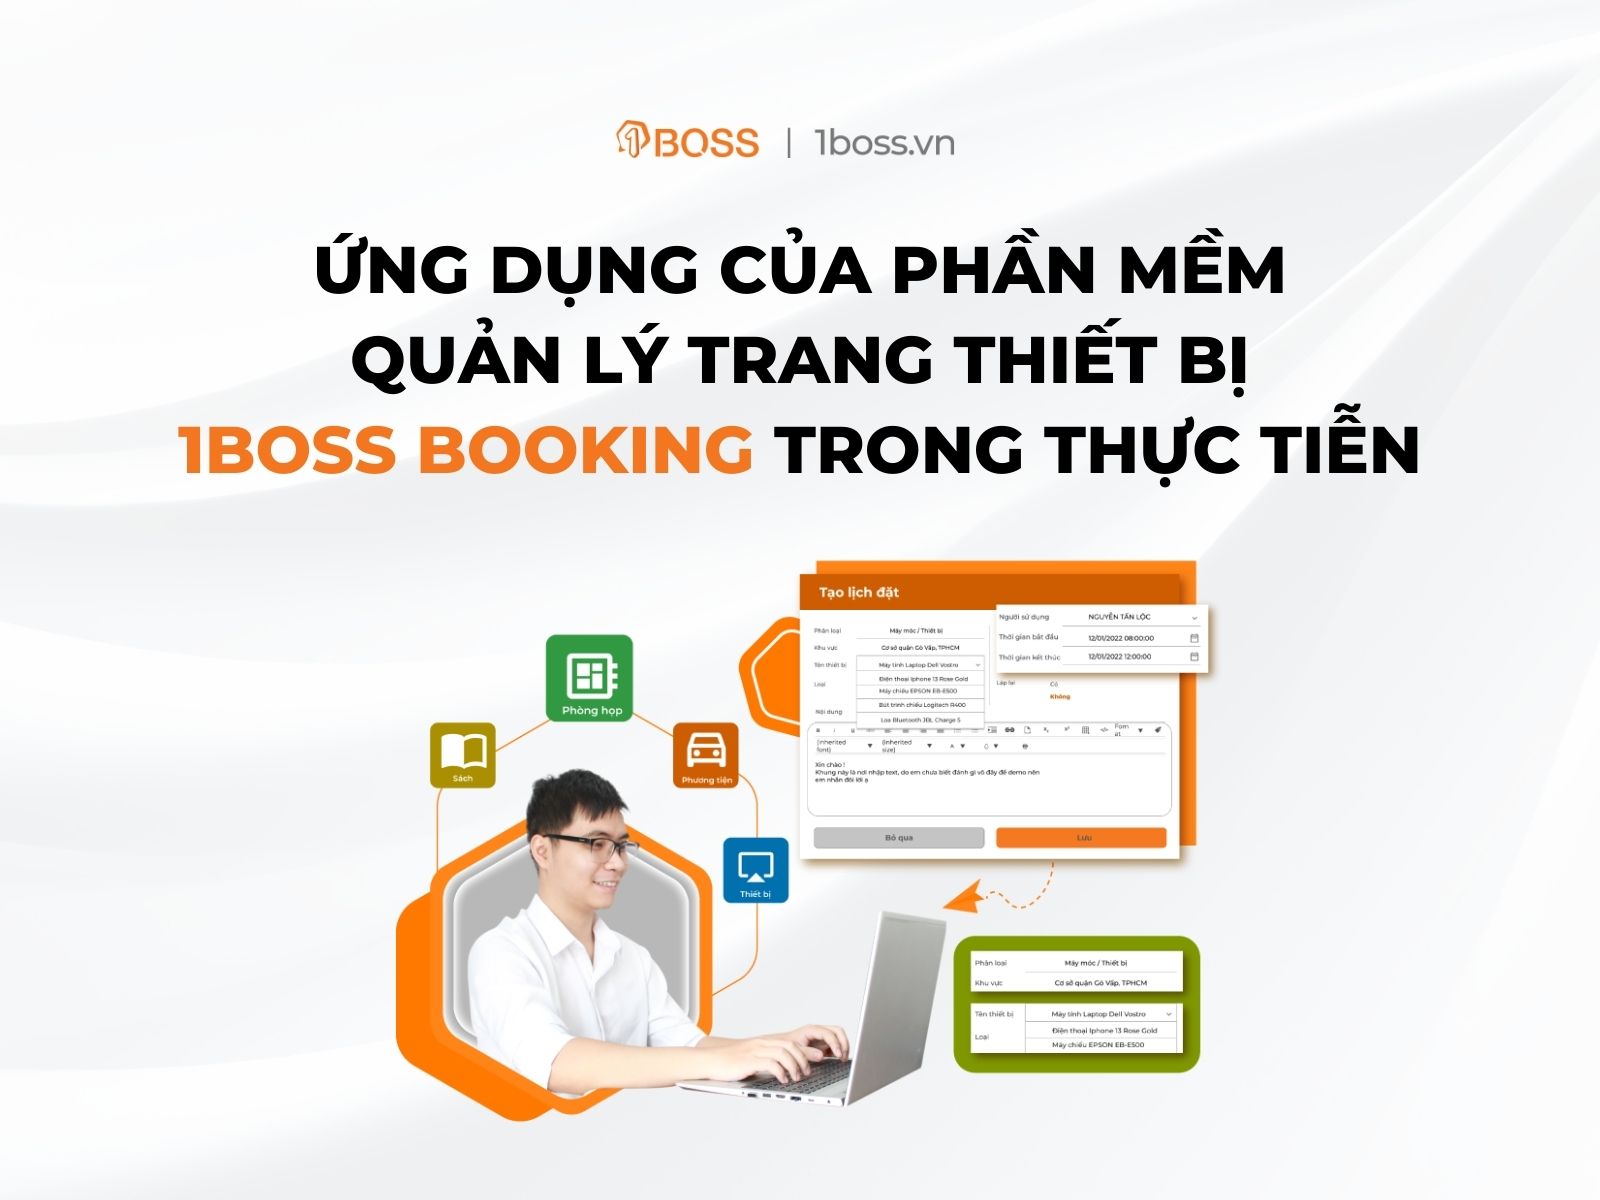 Ứng dụng của phần mềm quản lý trang thiết bị 1BOSS Booking trong thực tiễn